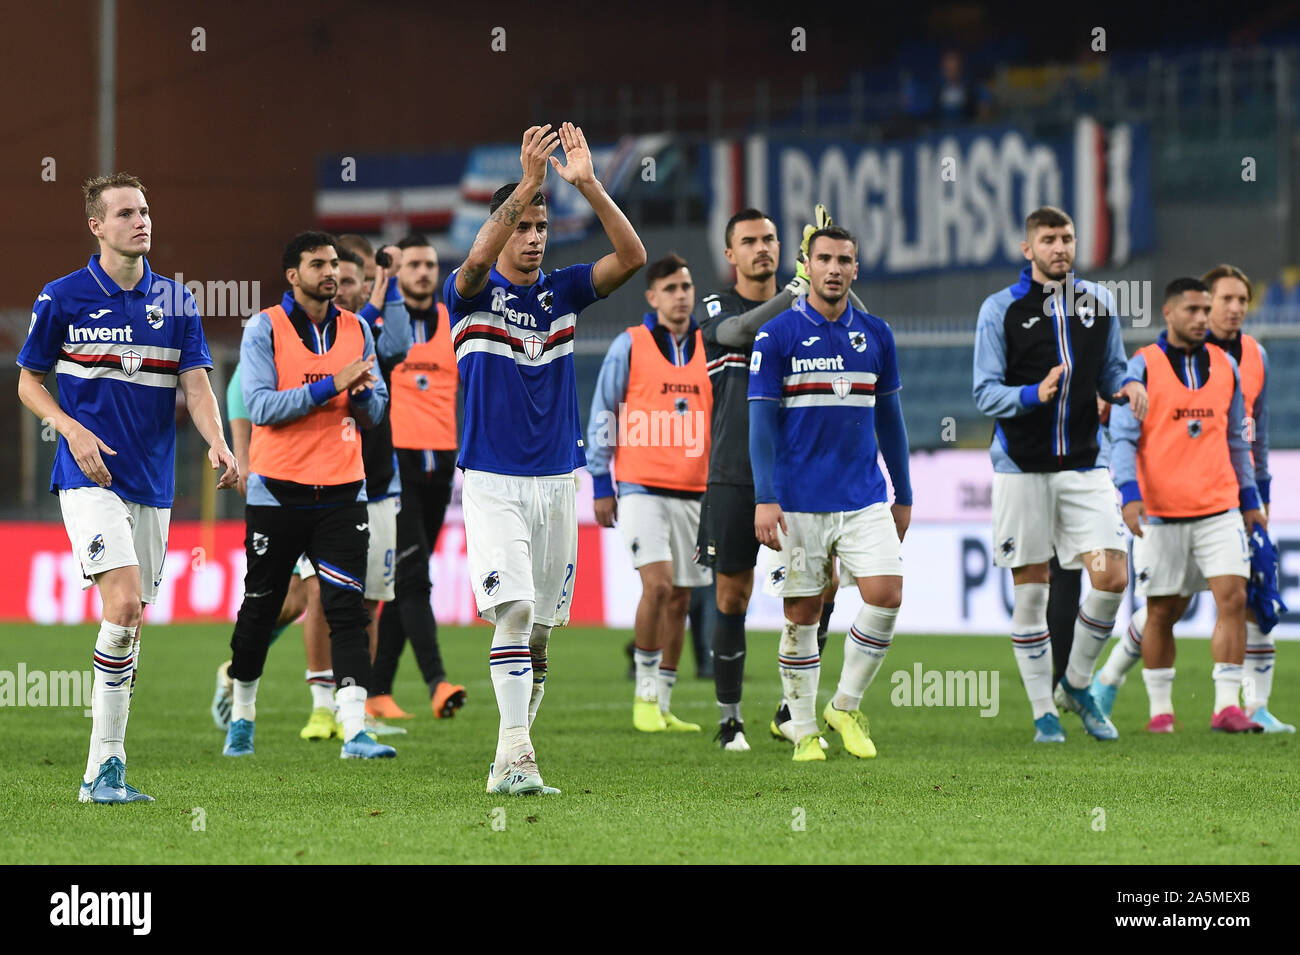 Ich Spieler von Sampdoria, einem feinen Partita, salutano der Proprio pubblico bei Sampdoria vs AS Rom, Genua, Italien, 20 Okt 2019, Fußball Italienische Fußball S Stockfoto